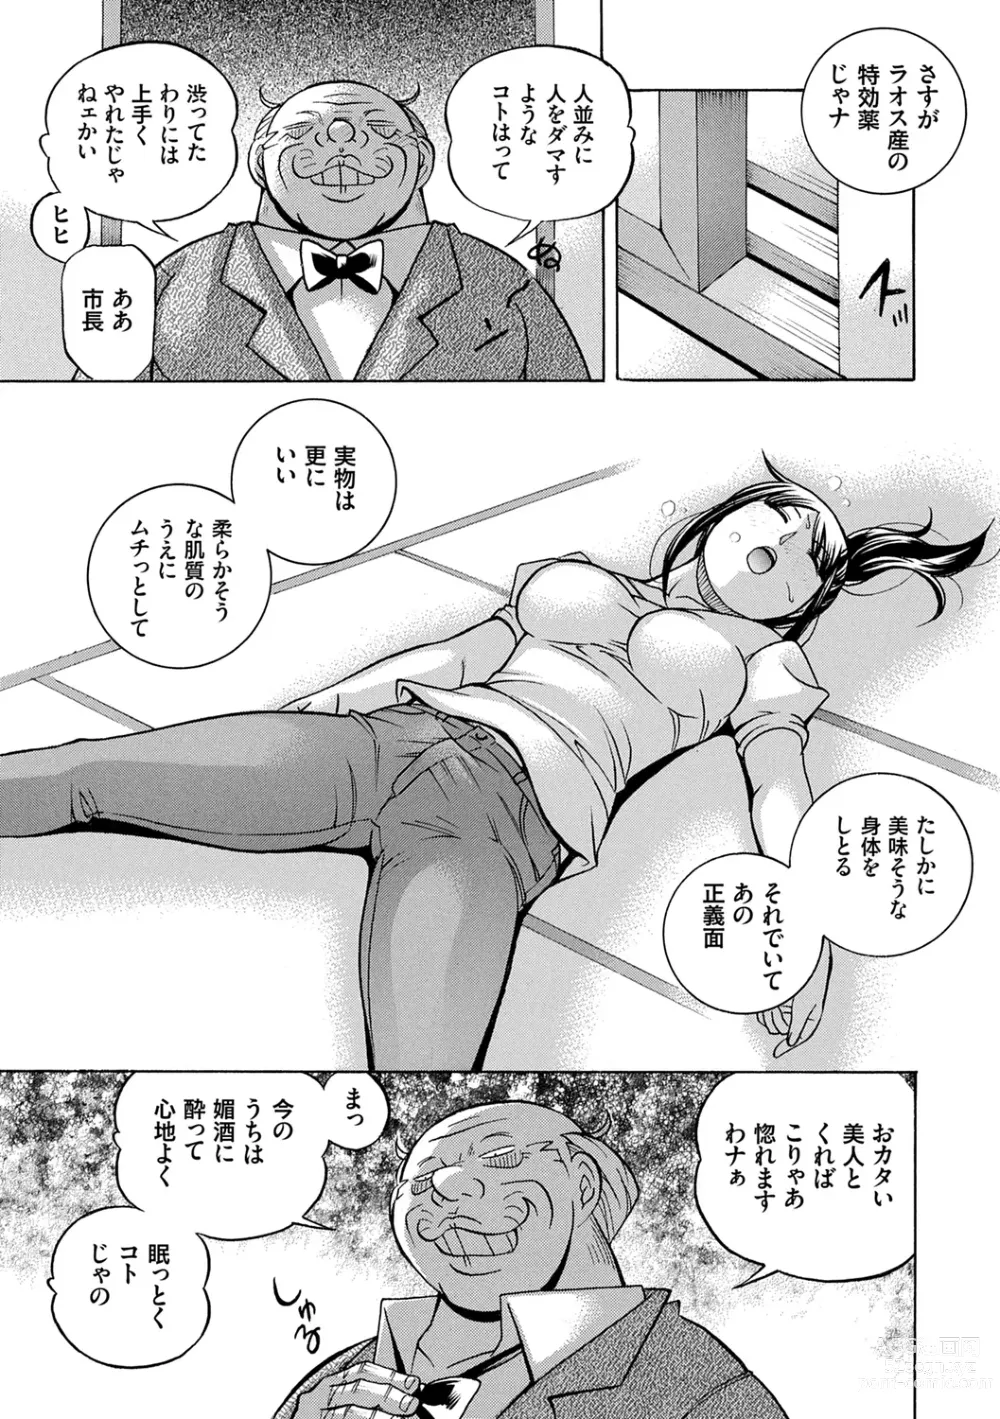 Page 17 of manga Joshidaisei Yuuka